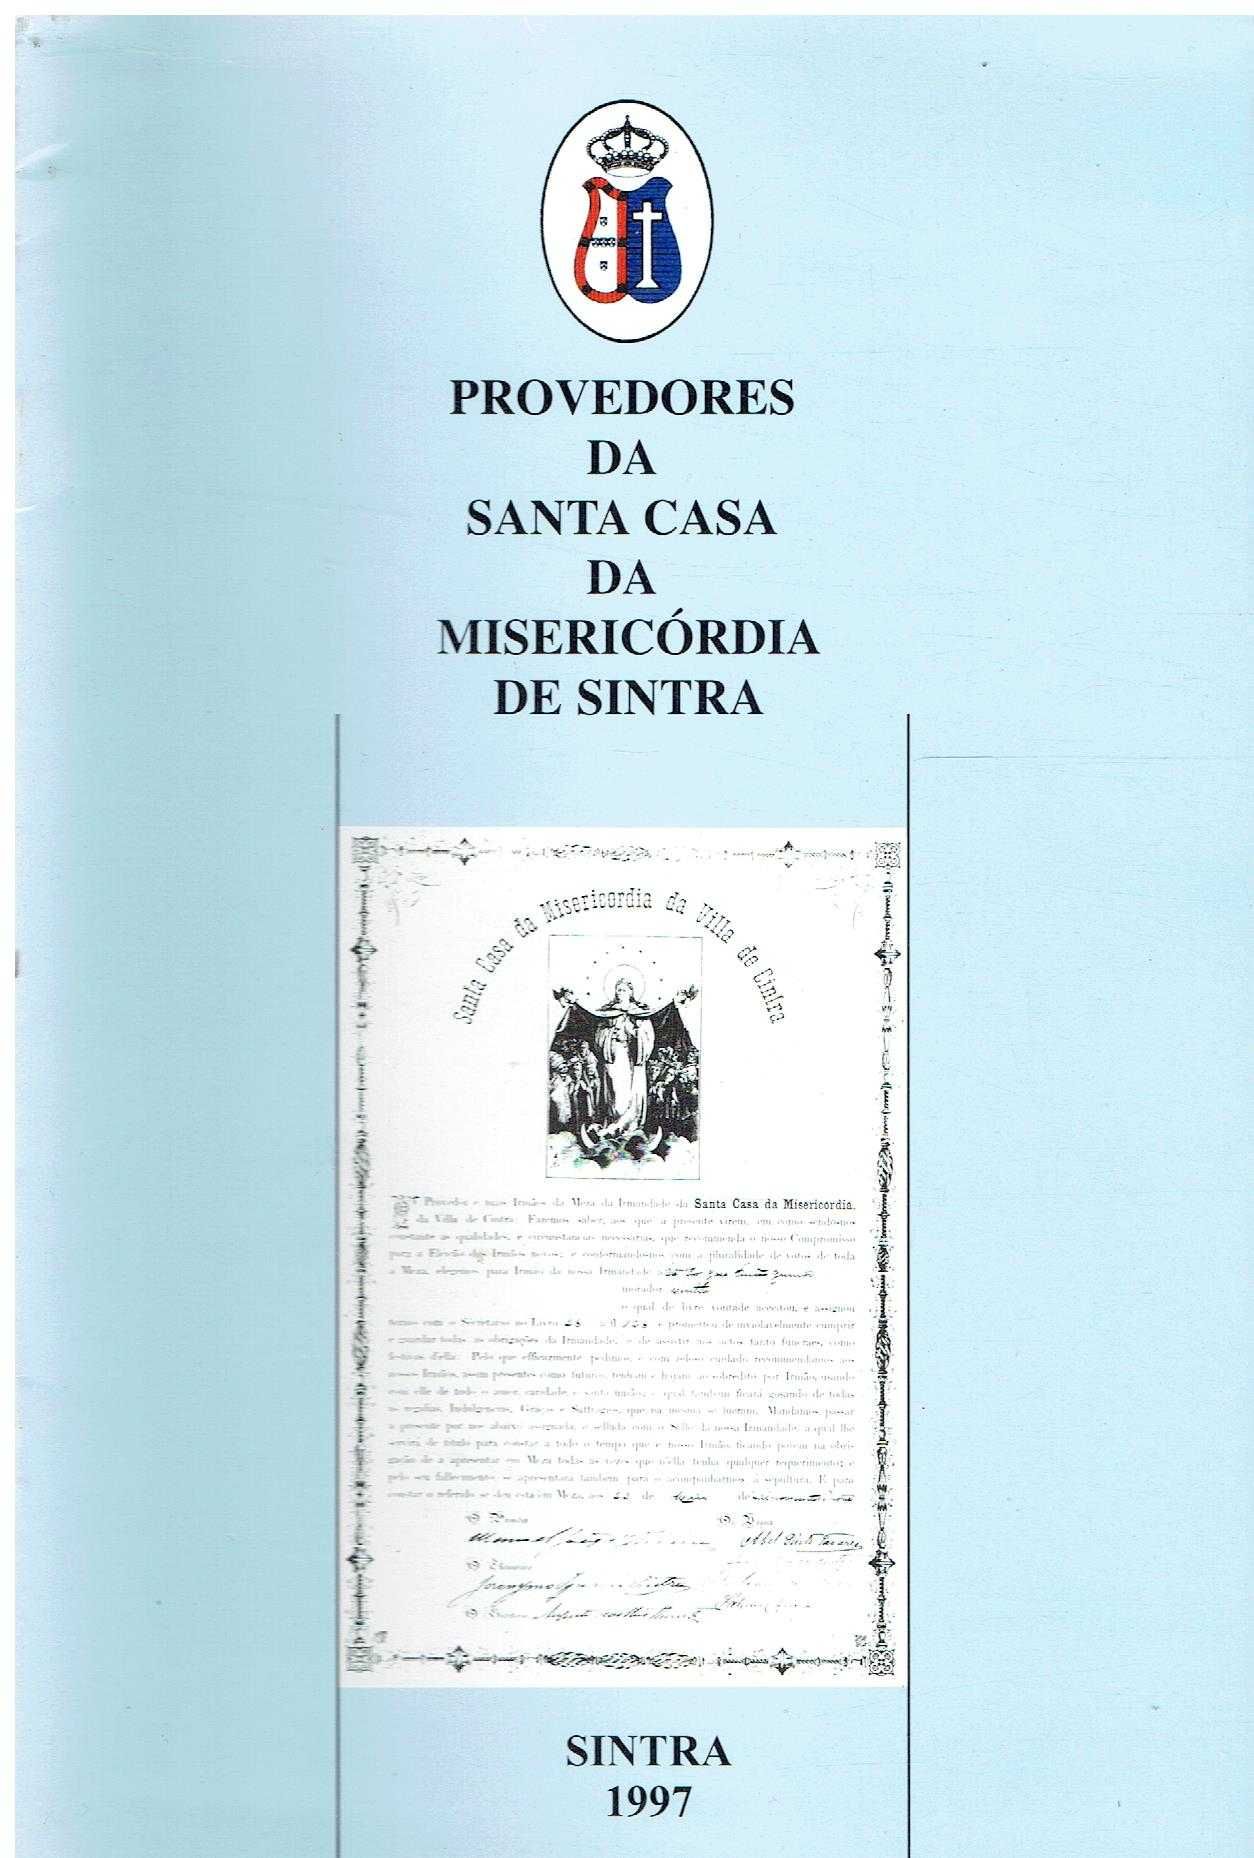 4300 - Monografias - Livros sobre a região de Sintra